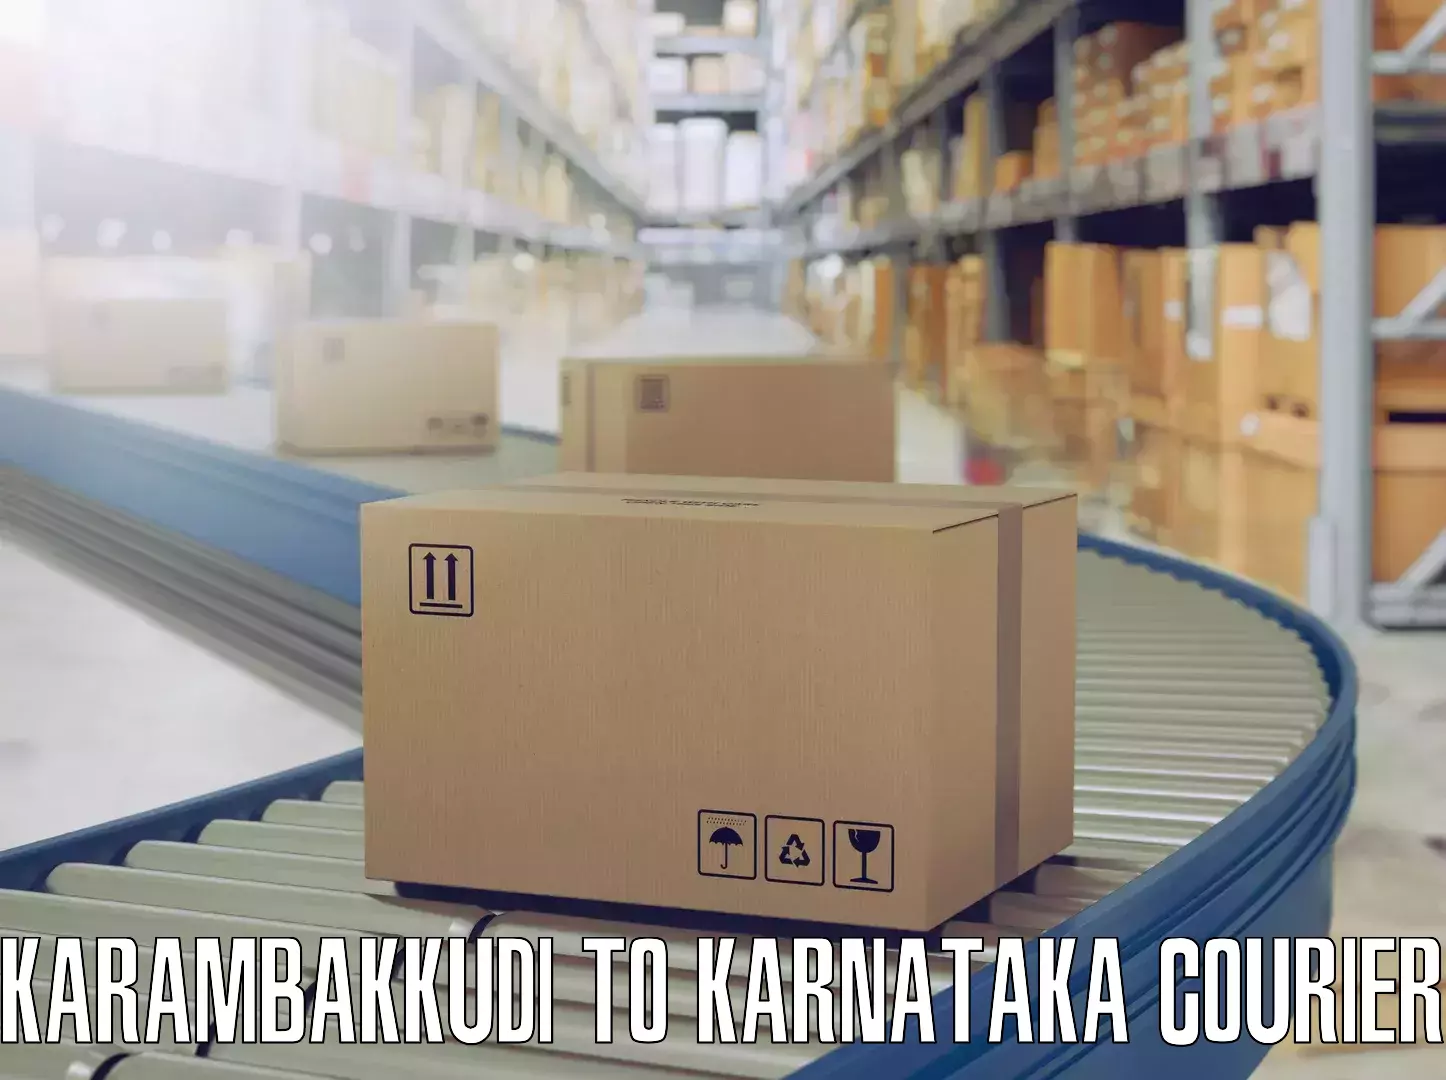 Trusted furniture transport Karambakkudi to Karnataka